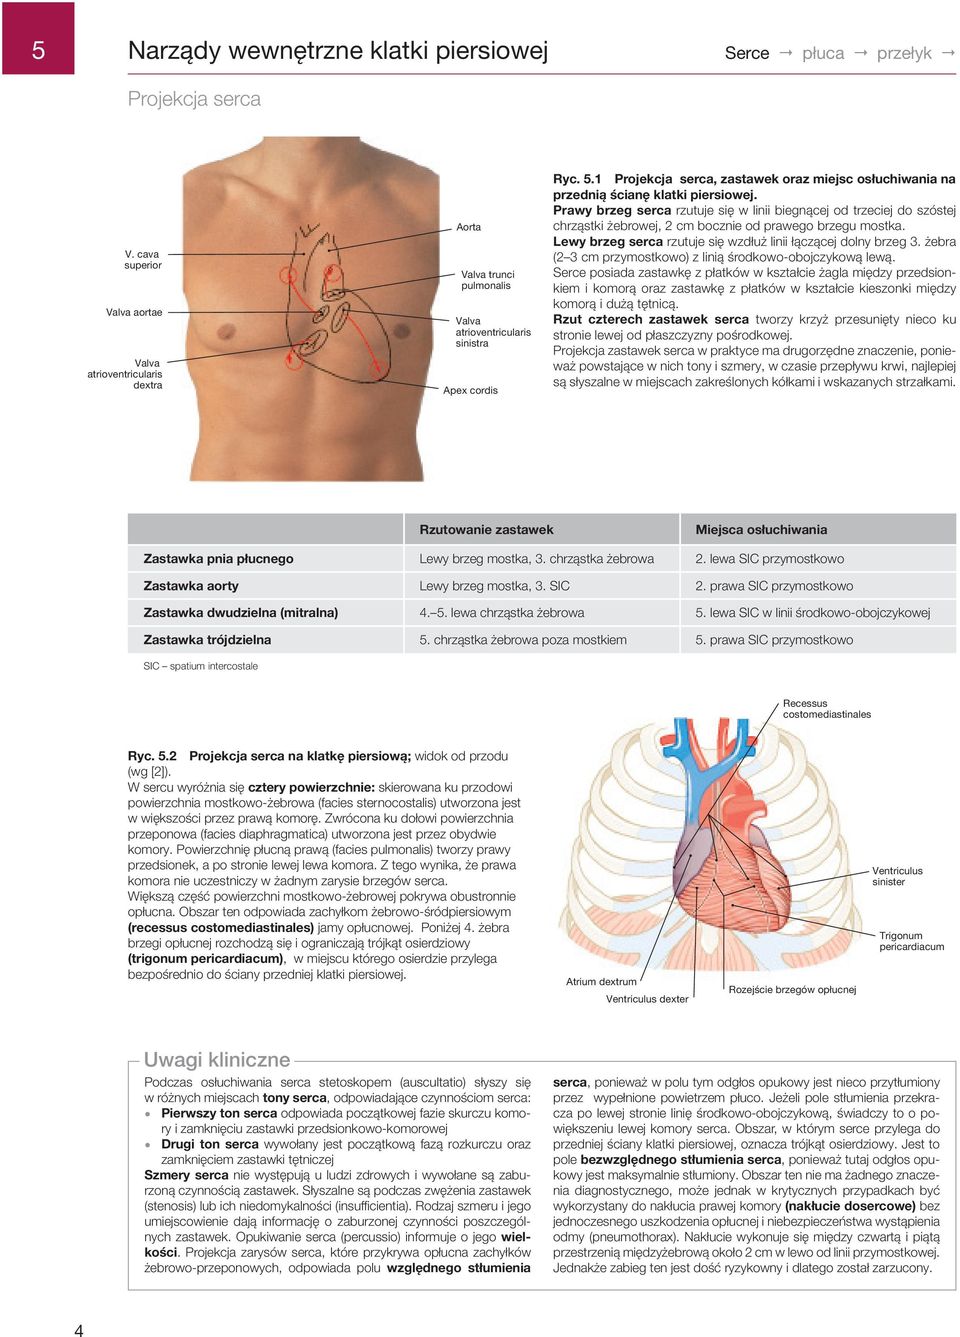 .1 Projekcja serca, zastawek oraz miejsc osłuchiwania na przednią ścianę klatki piersiowej.